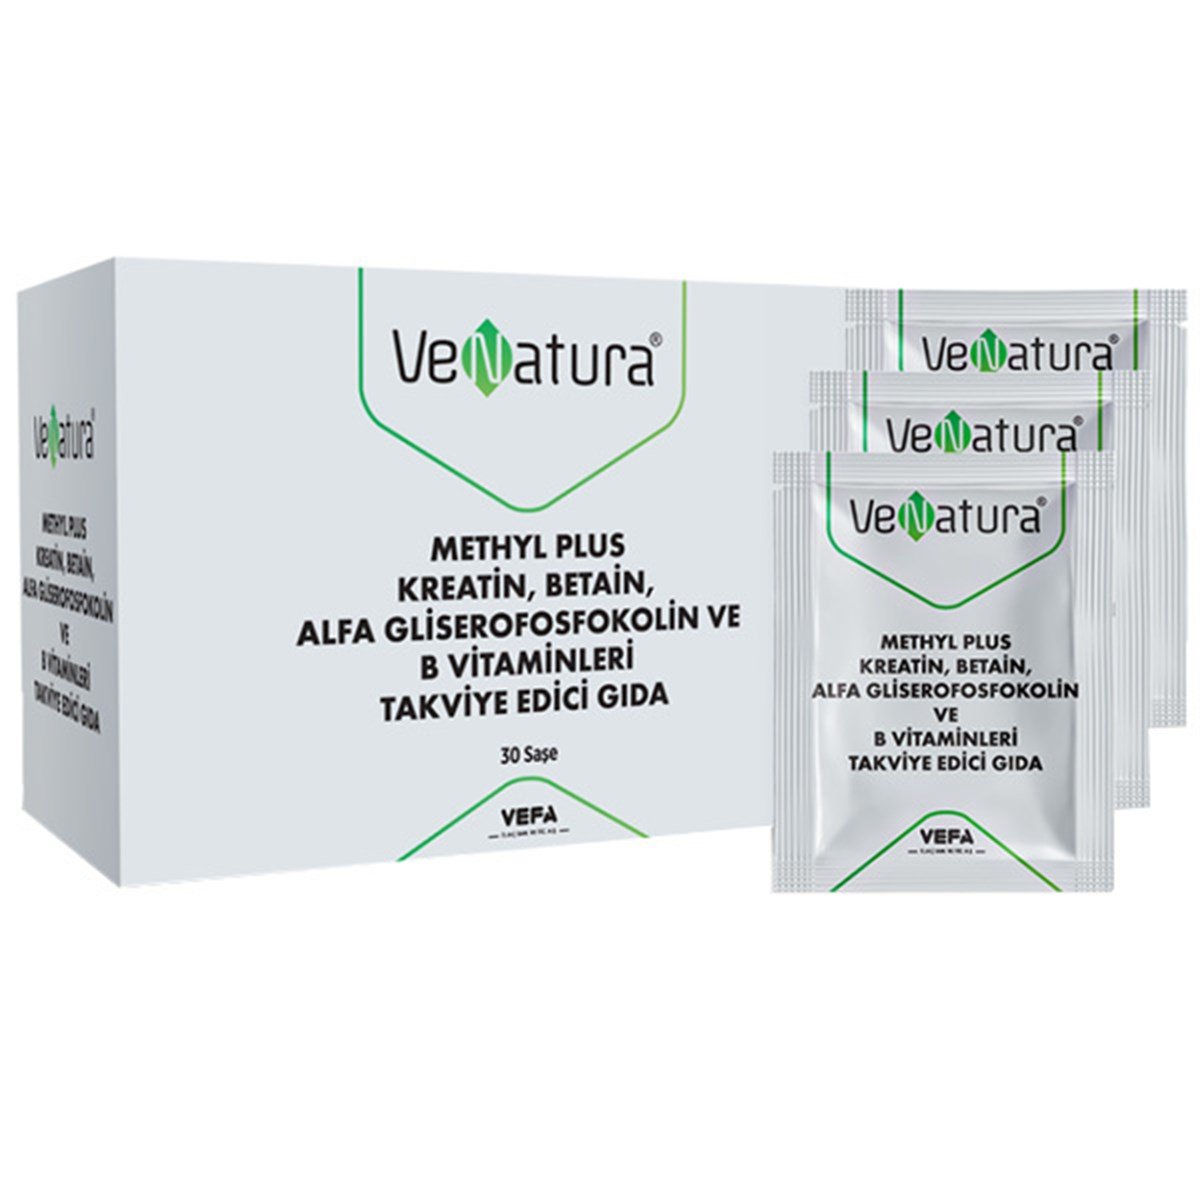 Venatura Methyl Plus Kreatin Betain Alfa Gliserofosfokolin ve B Vitaminleri  30 Saşe Gıda Takviyesi | ozekpharma.com